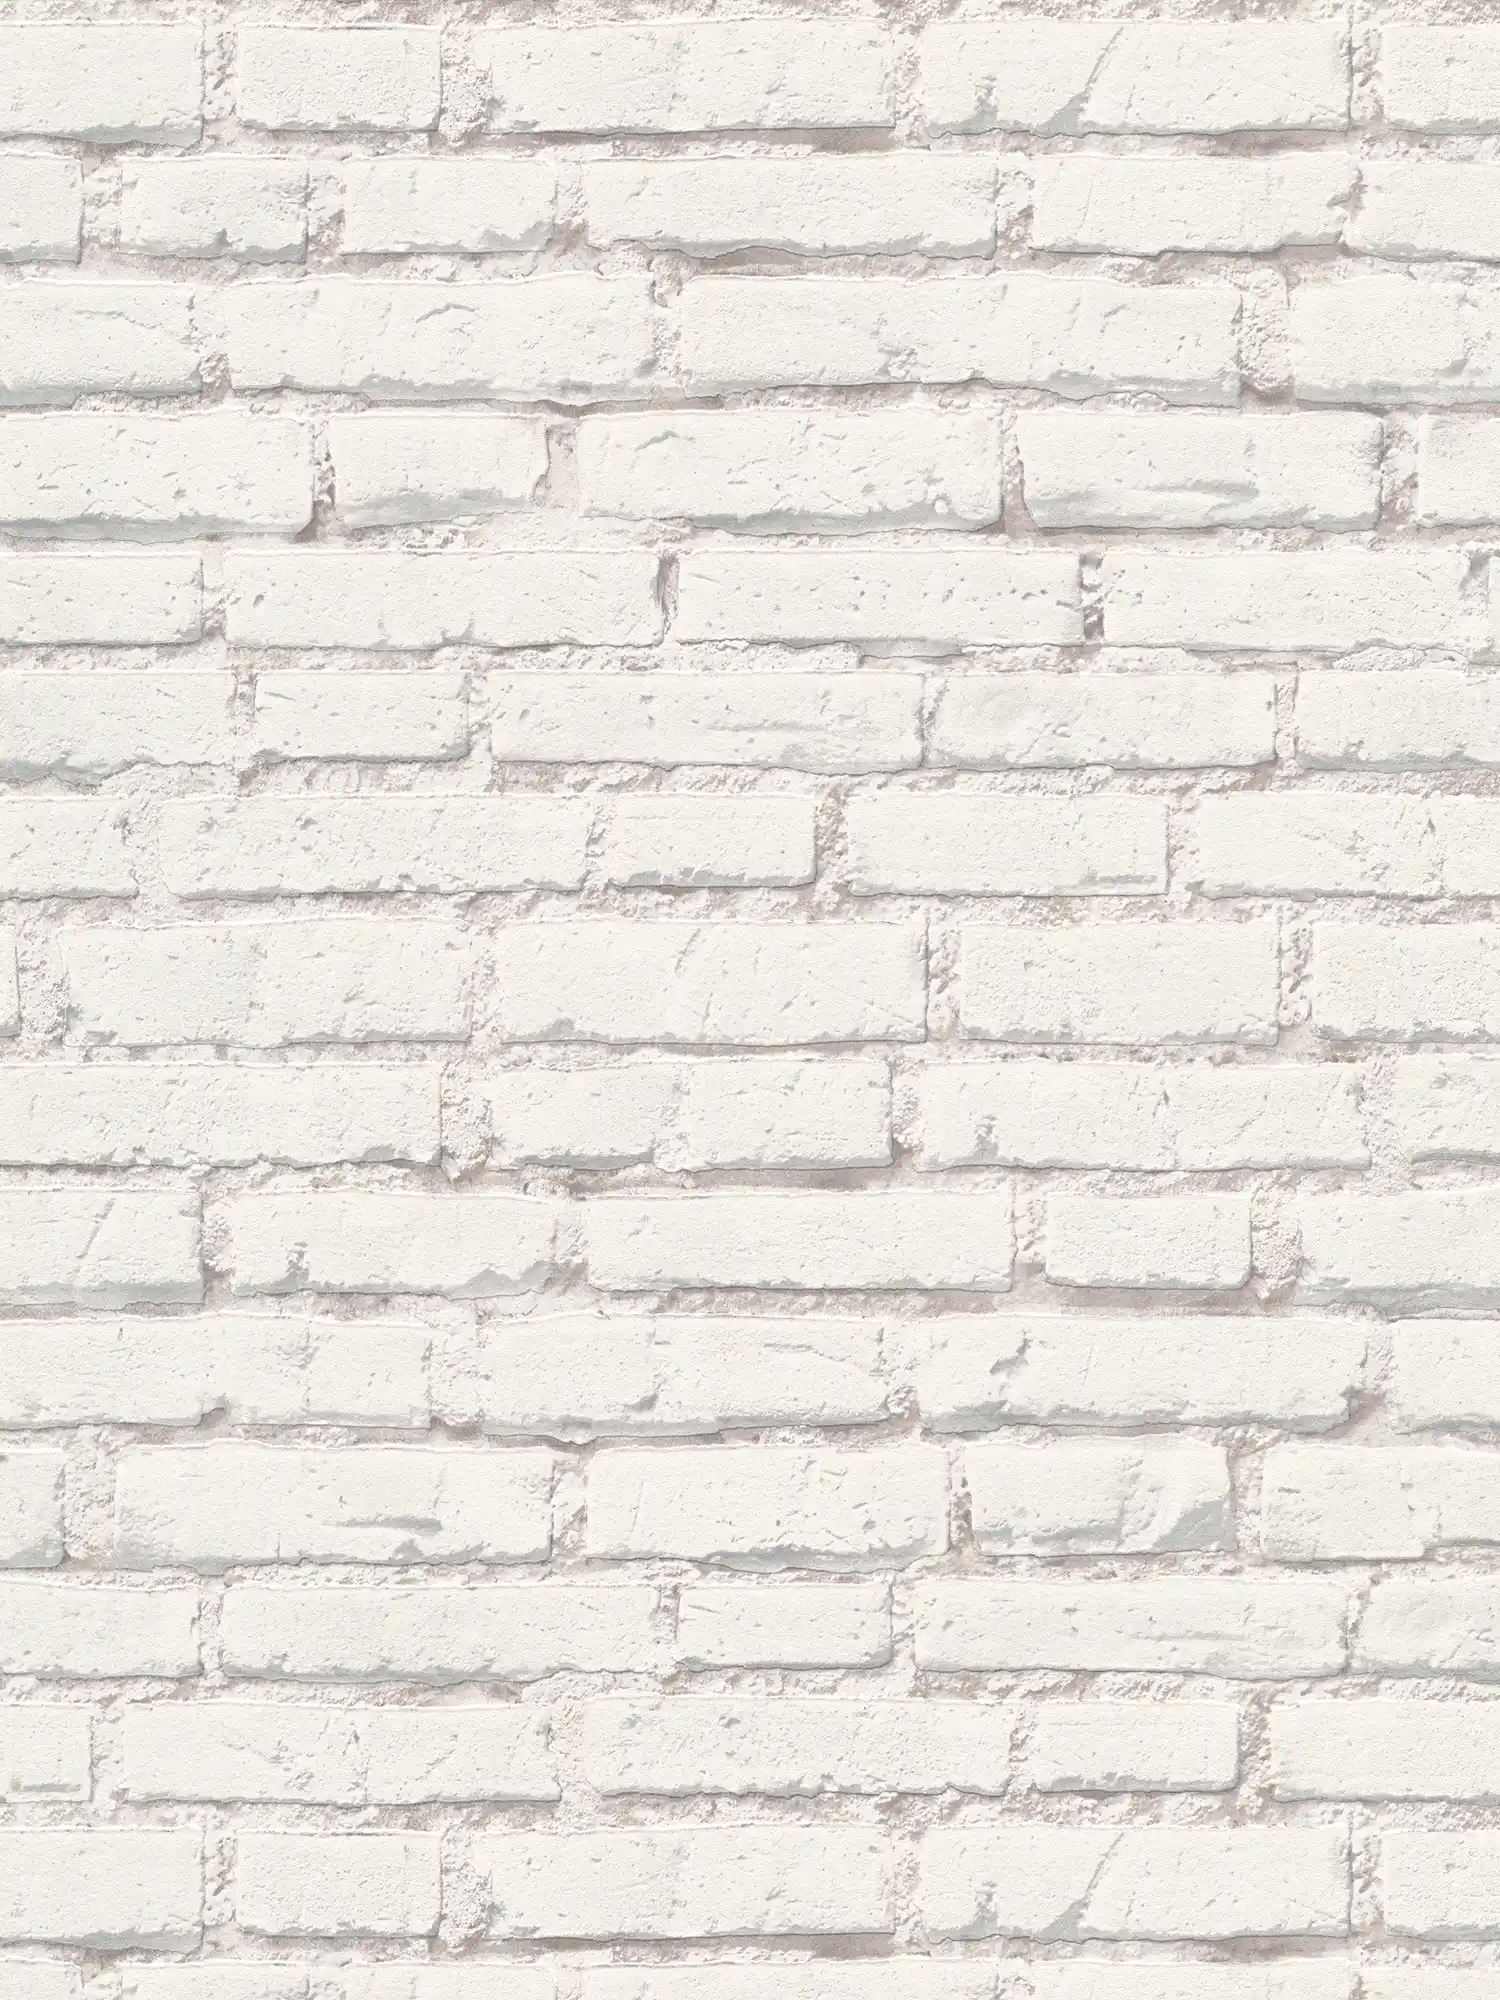             Carta da parati con muro di mattoni con pietre bianche e fughe - Bianco, Grigio
        